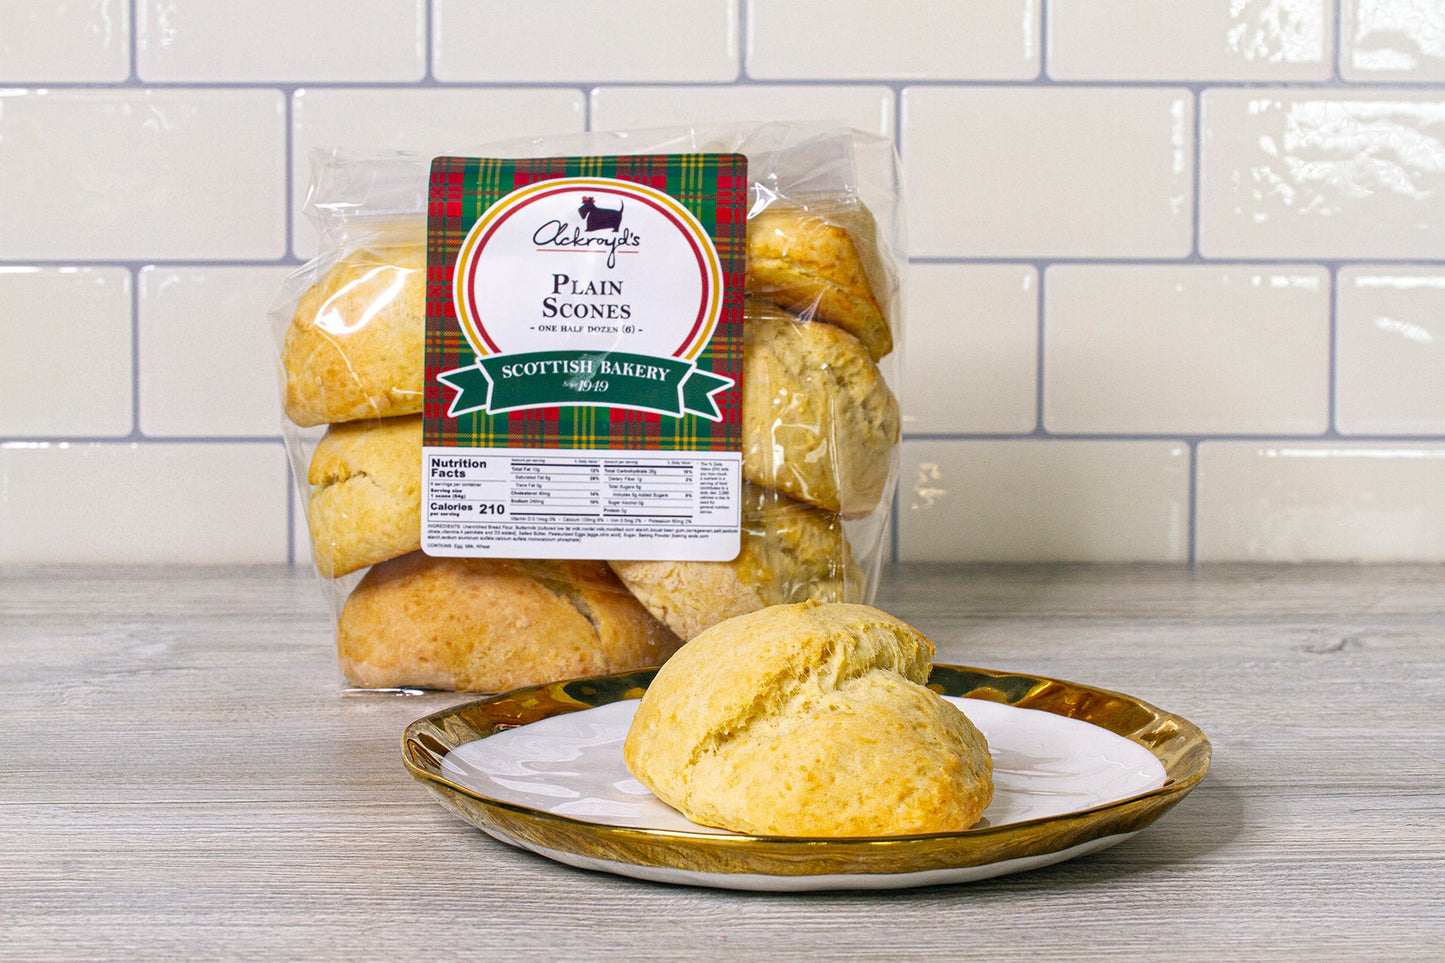 Ackroyd's Scones: Variety Pack (2 Dozen) - Ackroyd's Scottish Bakery